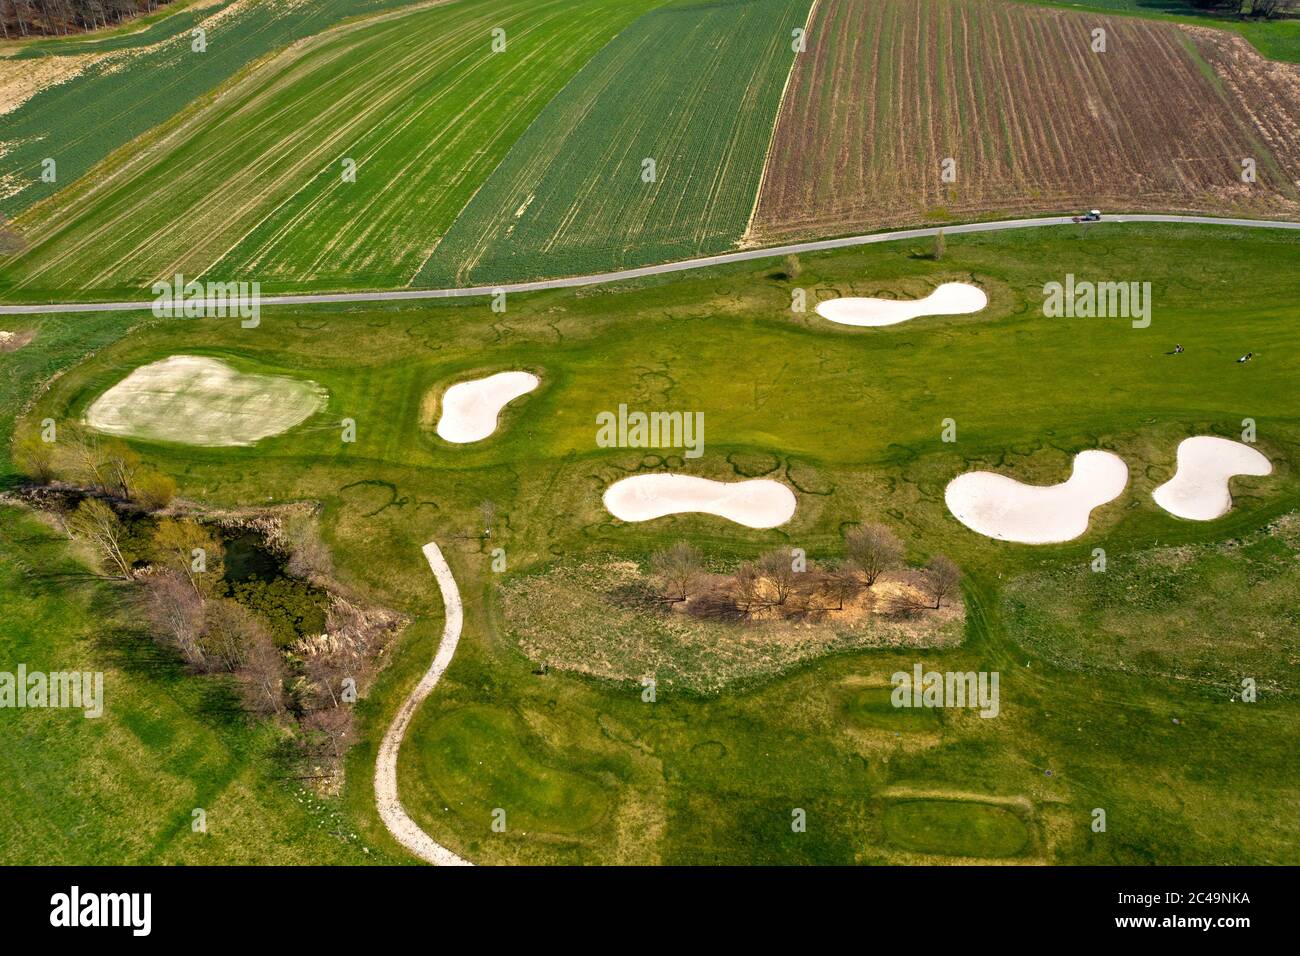 Parcours de golf avec bunkers, fairway et green à côté des terres agricoles, Golf Parc signal de Bougy, Bougy-Villars, Suisse Banque D'Images